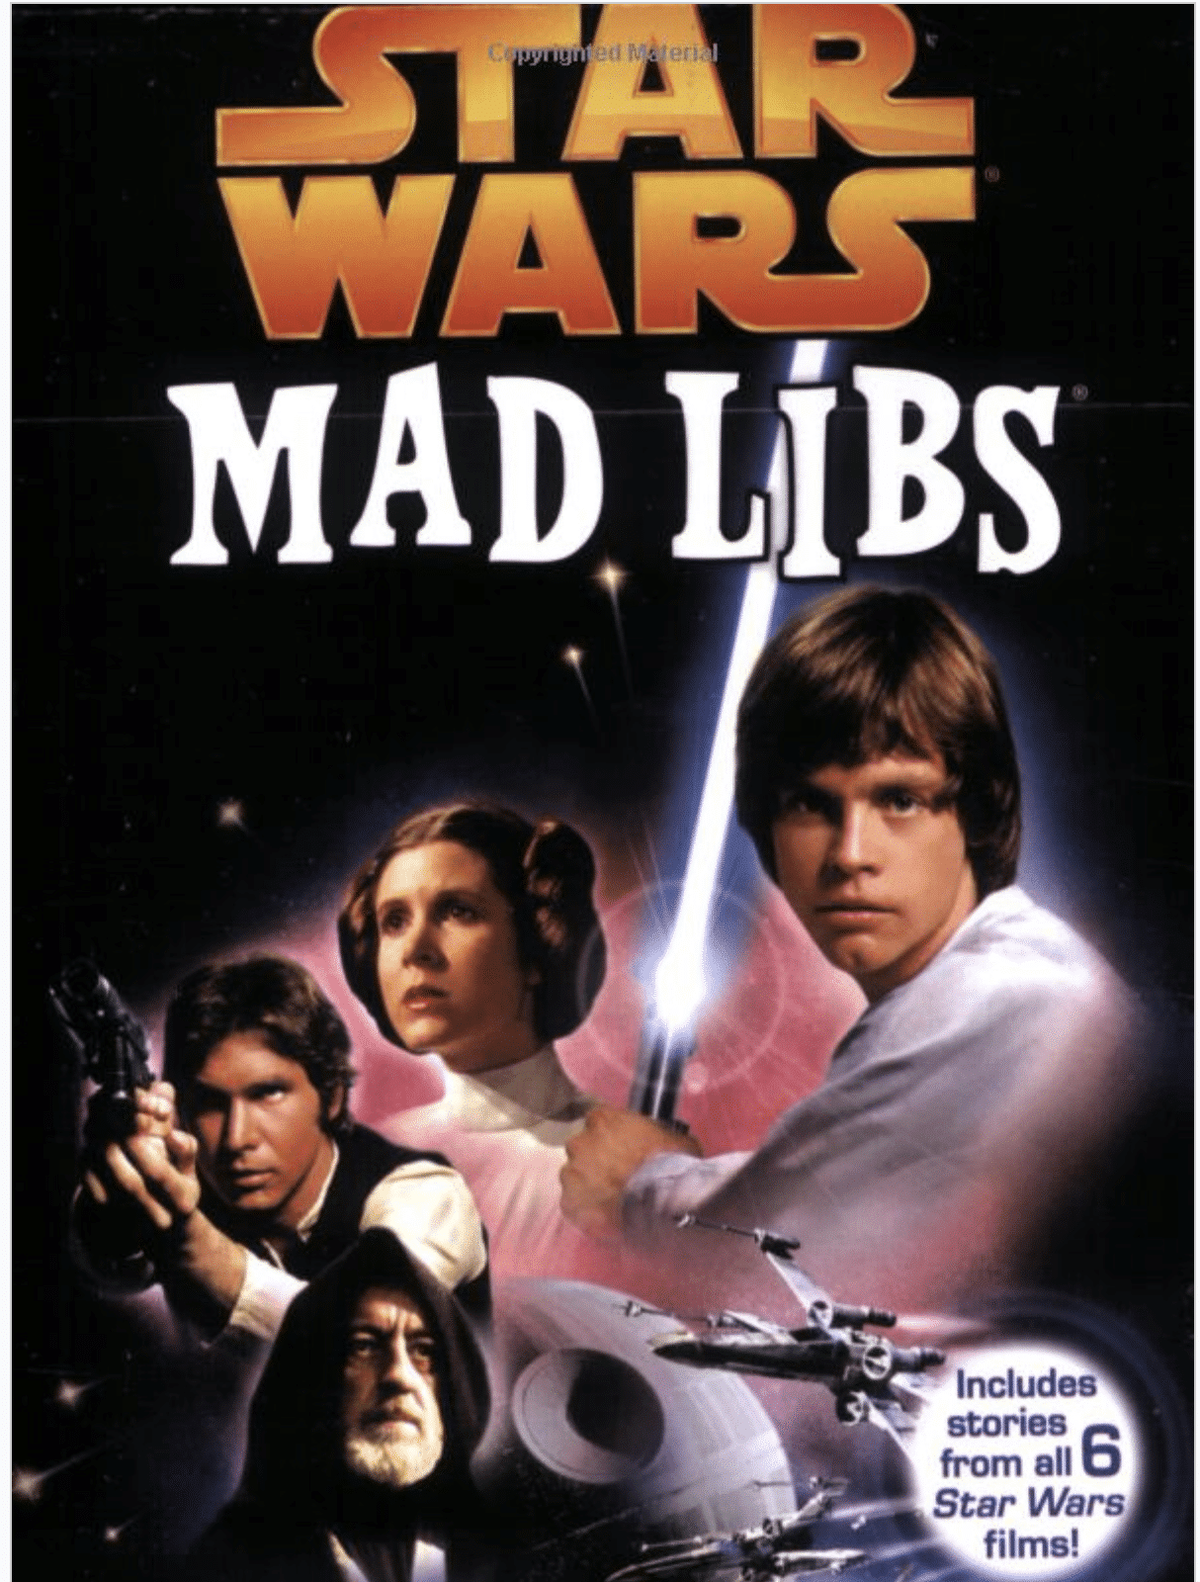 Звездные войны: Mad Libs - развлечение для детей и взрослых